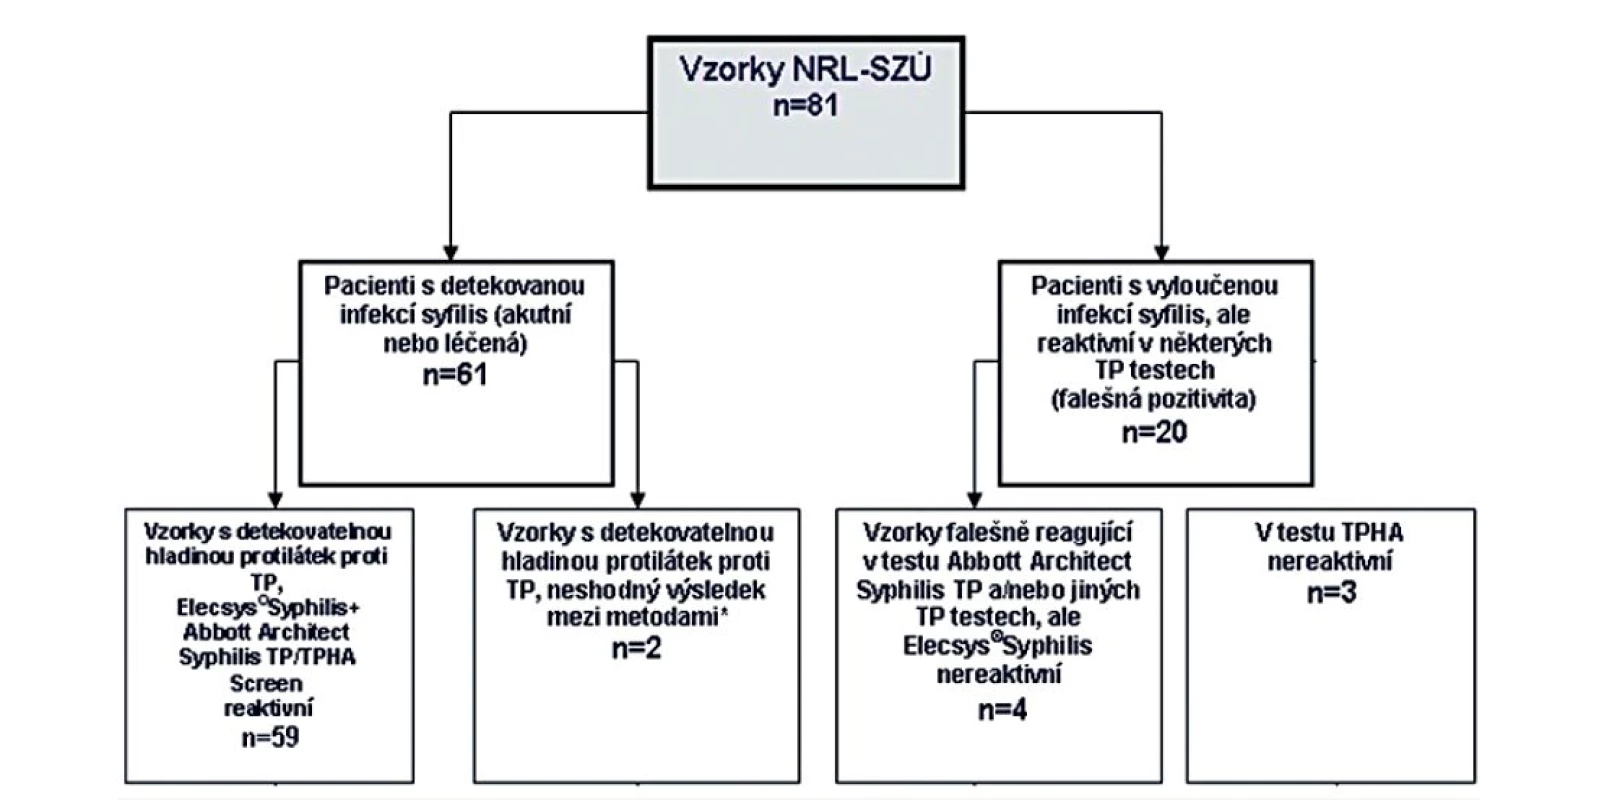 Srovnání klinické senzibility testu Elecsys<sup>®</sup>Syphilis vyšetřením reaktivních vzorků z NRL pro syfilis SZÚ Praha
